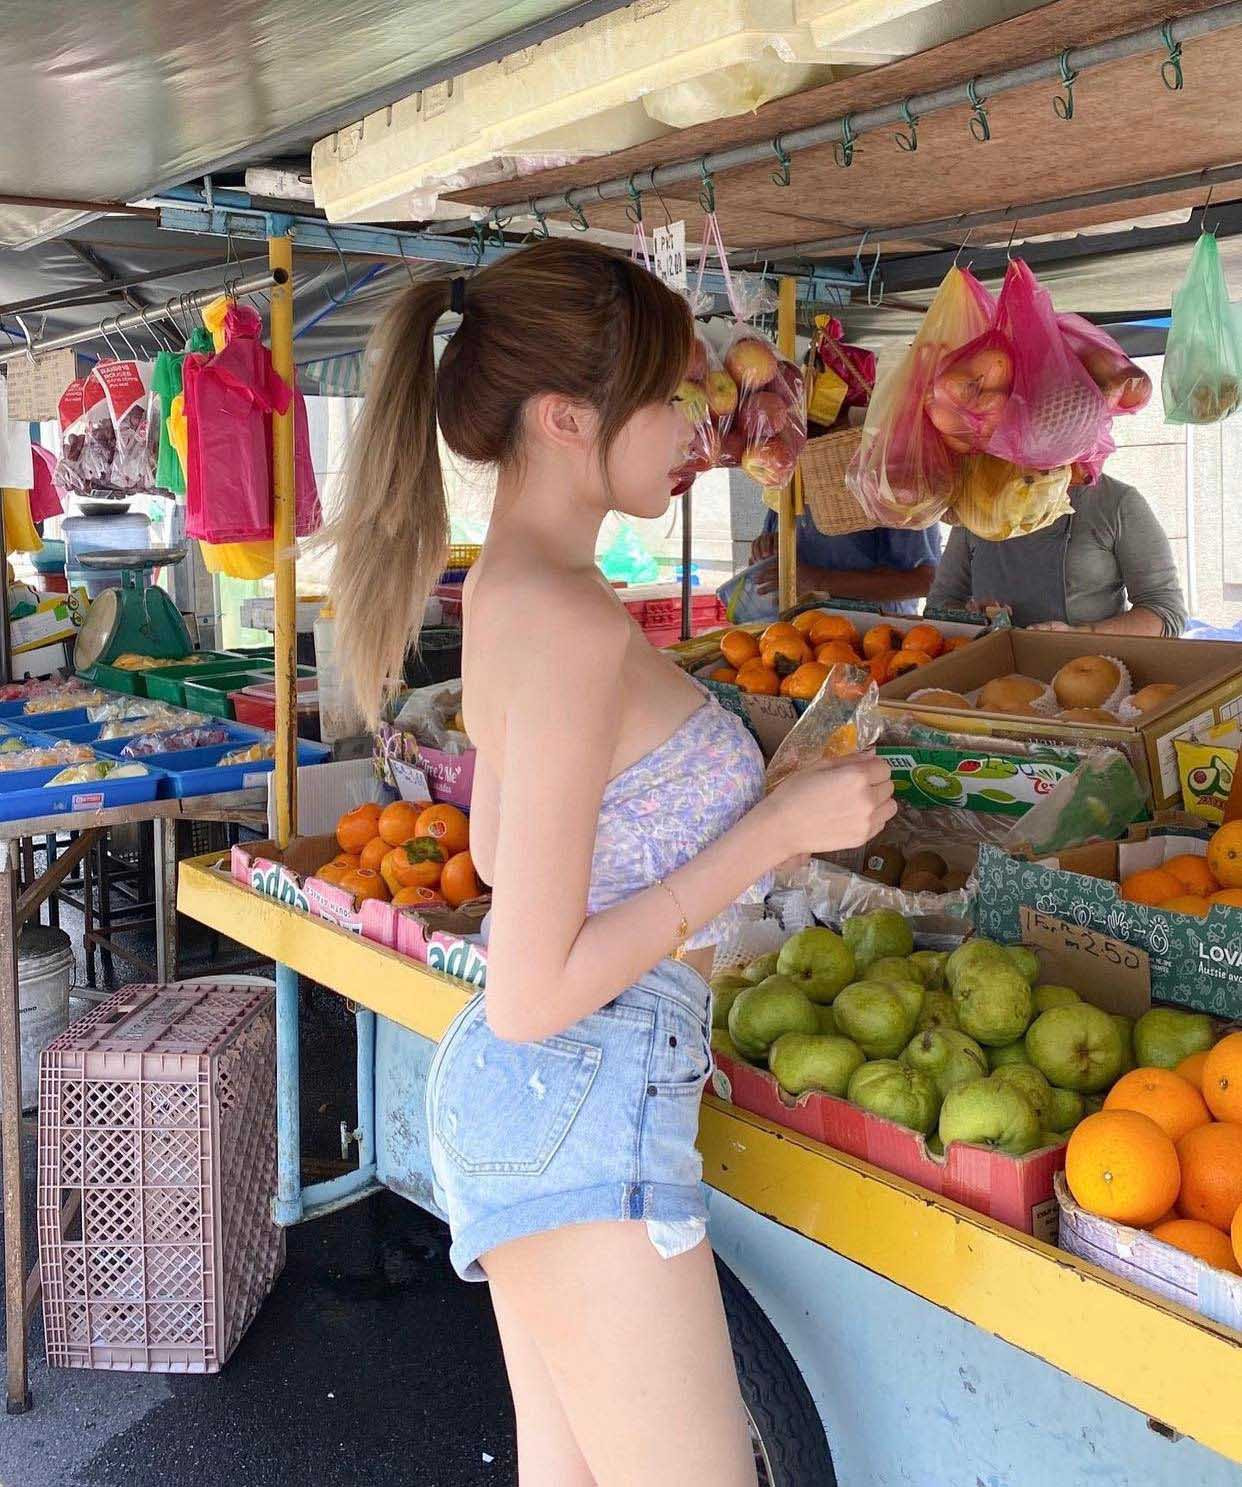 Mặc áo ngắn với quần lộ túi đi chợ mua hoa quả, cô gái khoe trọn vóc dáng đẹp - 3